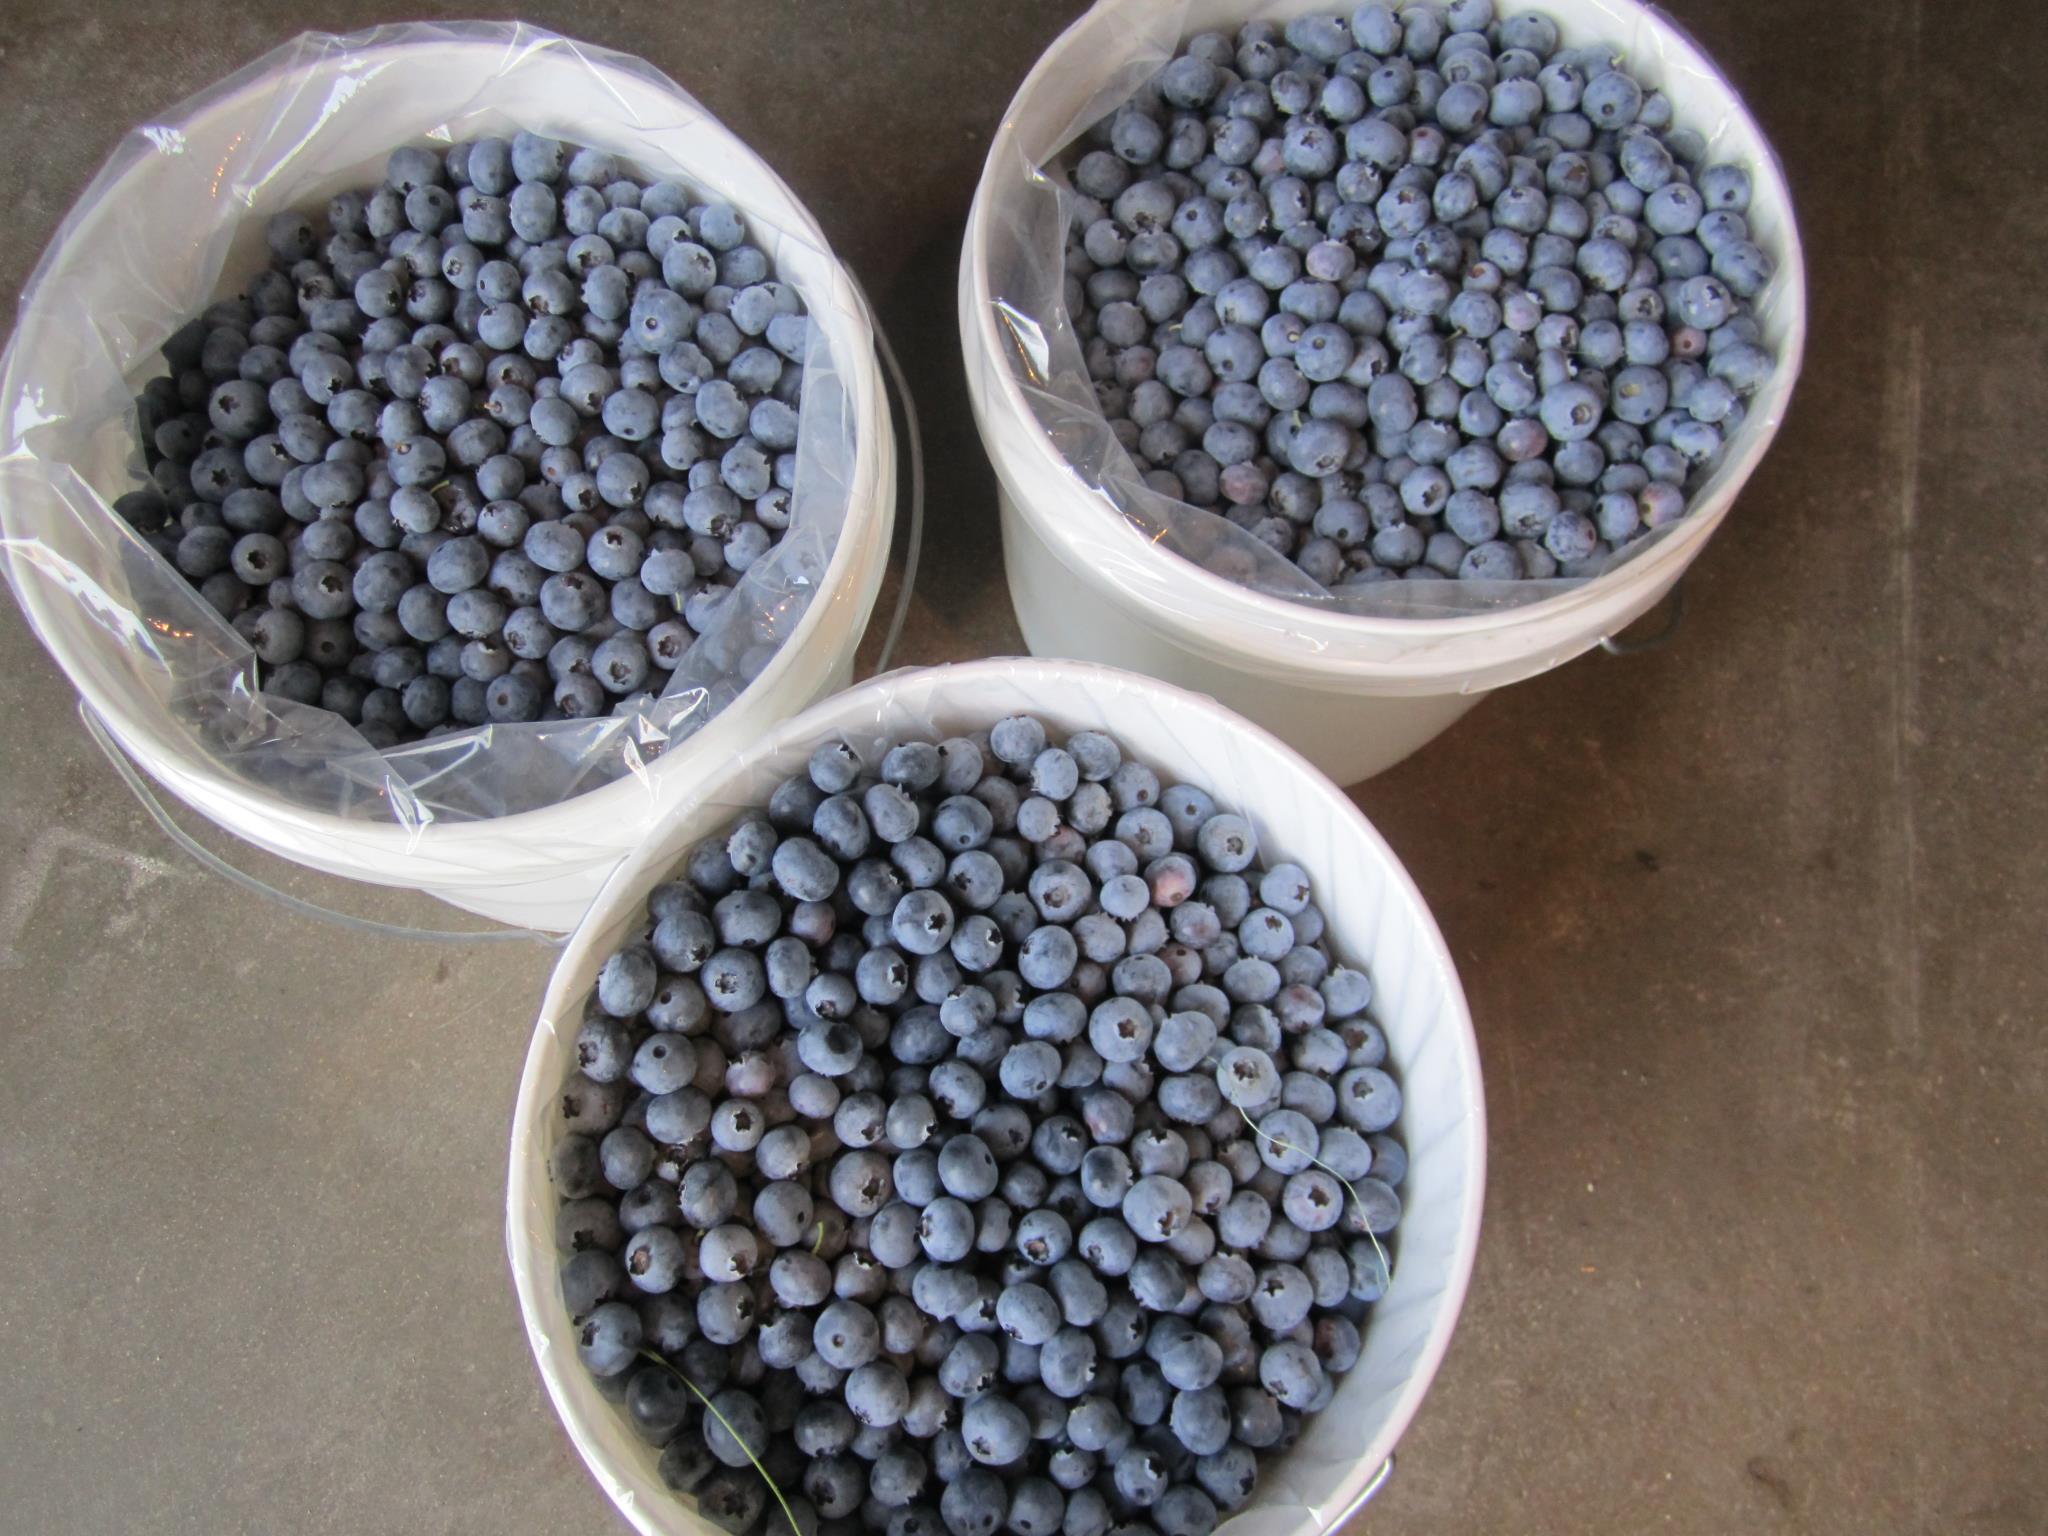 u-pick-blueberries-3.jpg